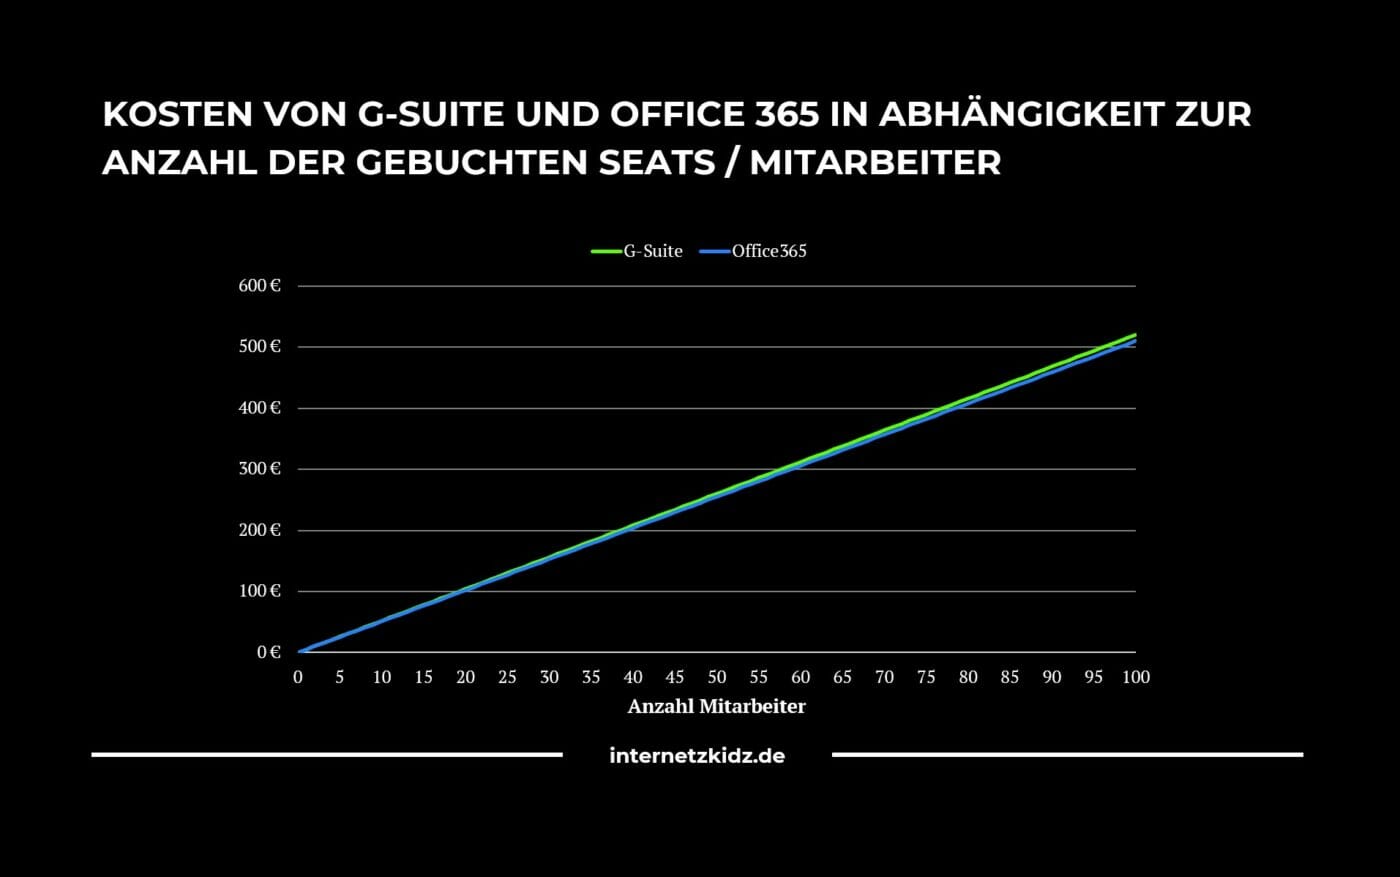 Office365 vs G-Suite Kosten pro Monat für X Mitarbeiter